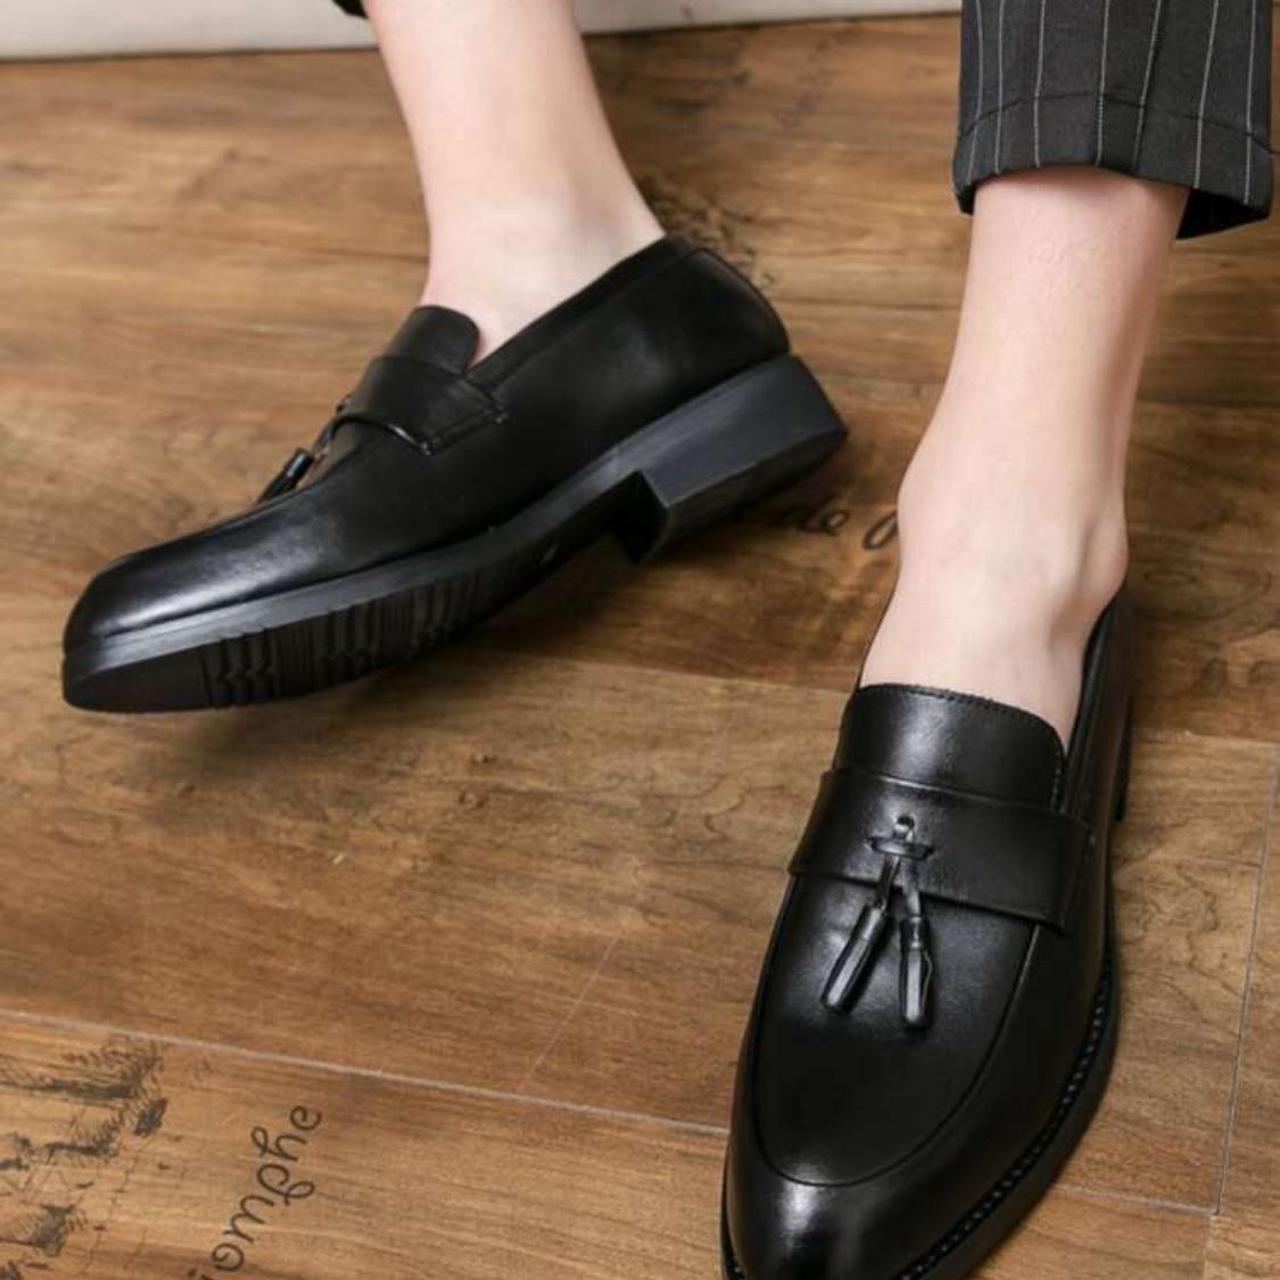 New Trendy Loafers For Men, Slip-on Tassel Design,... - Depop